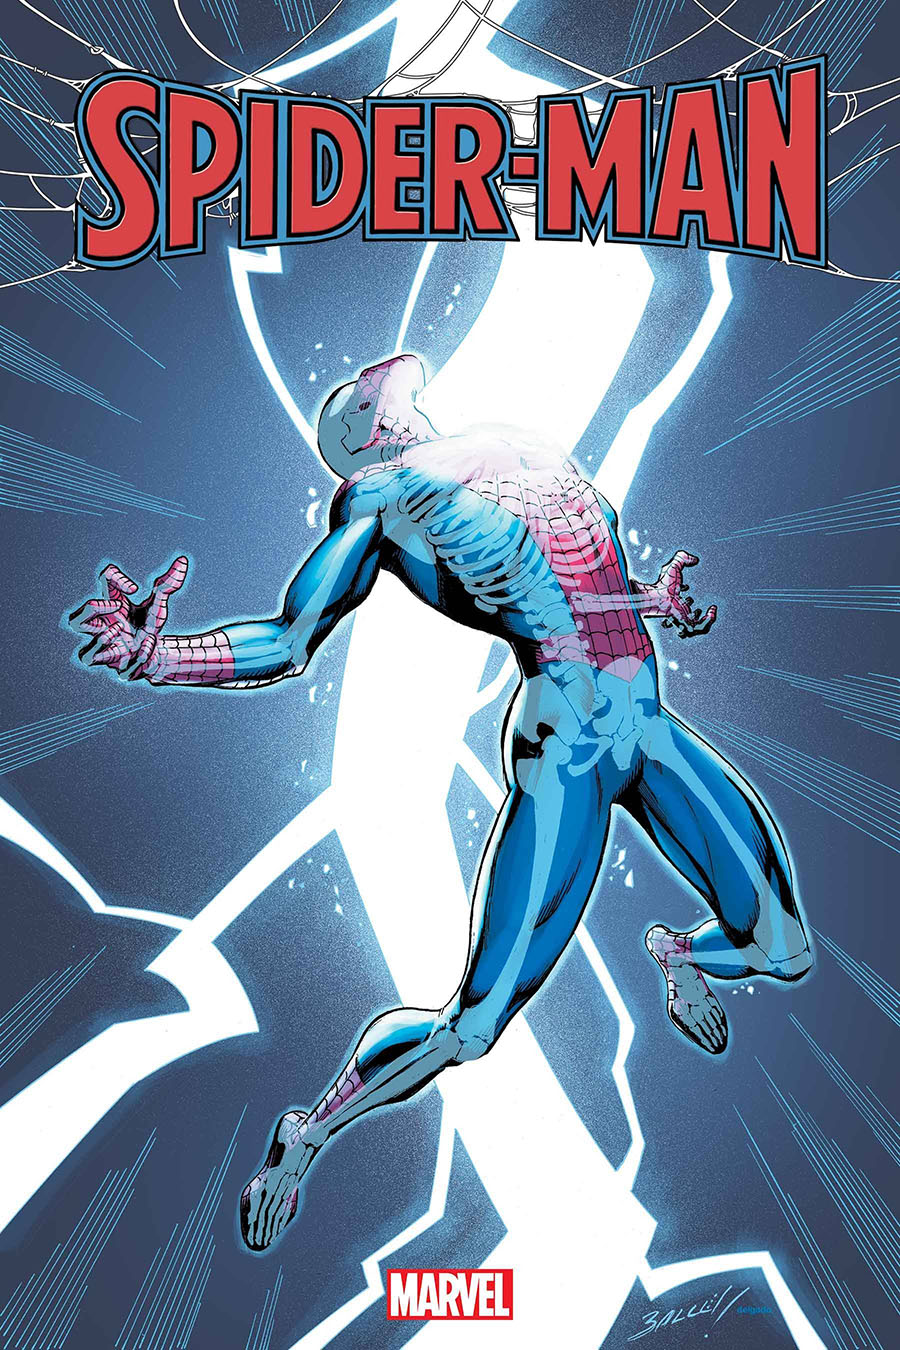 Spider-Man Vol 4 #8 Cover A Regular Mark Bagley Cover (Limit 1 Per Customer)